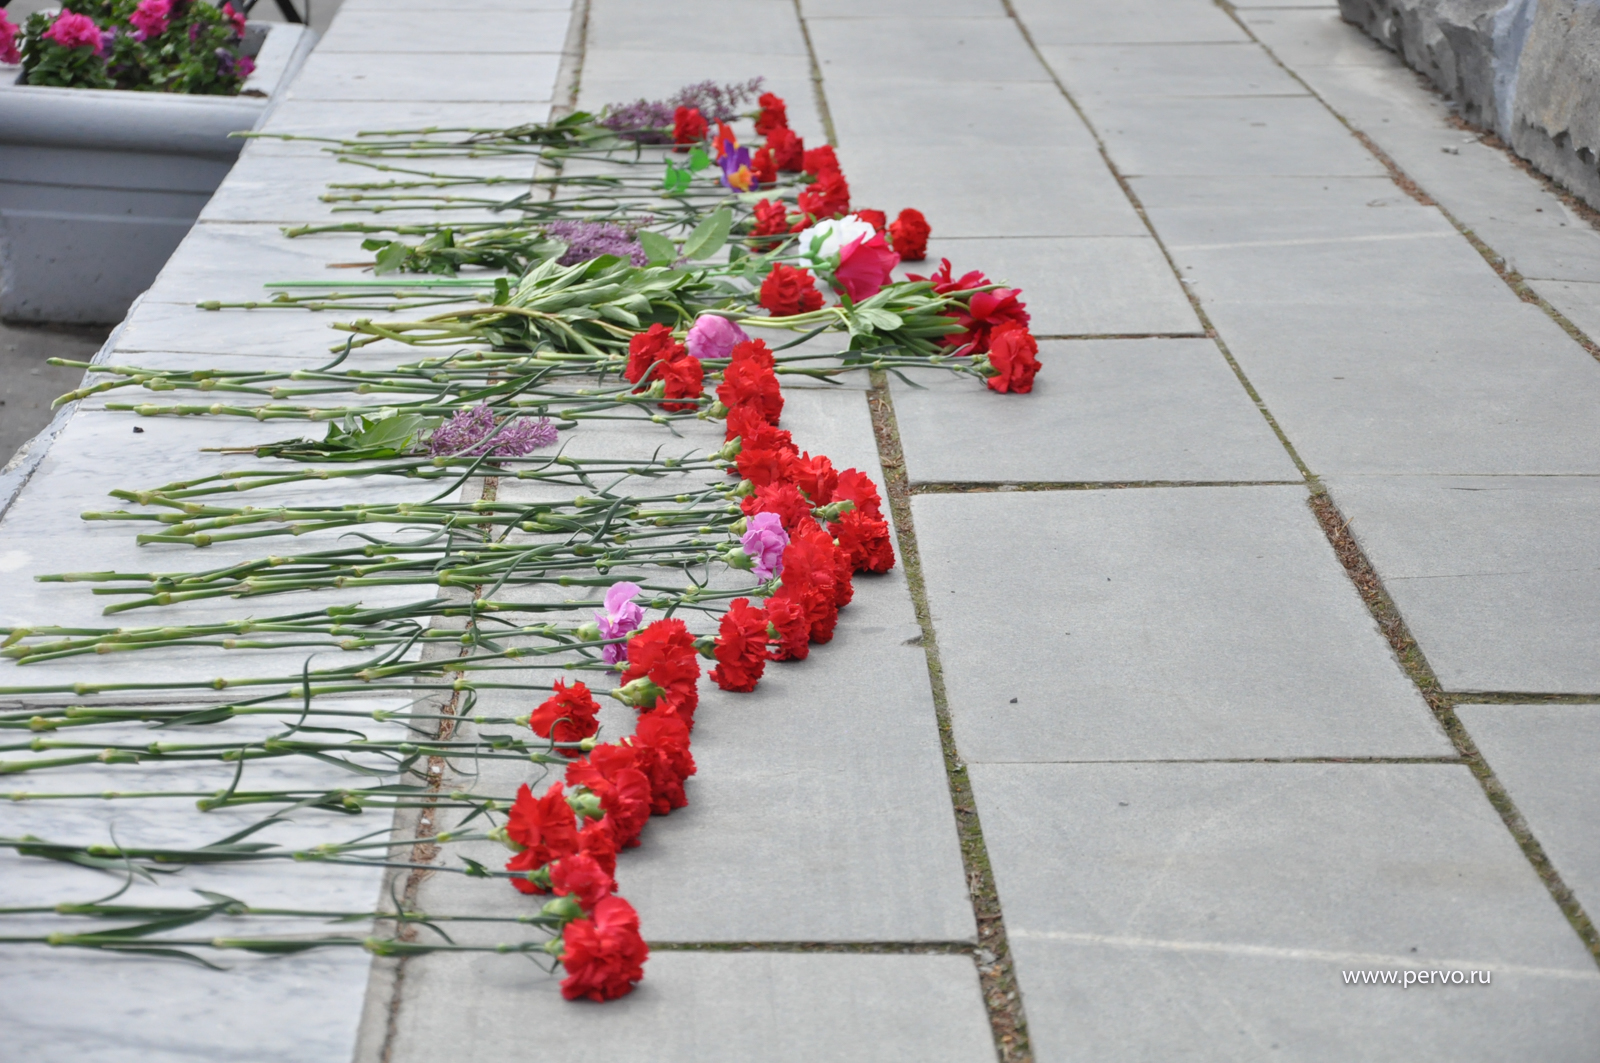 Депутаты почтили память павших в годы Великой Отечественной войны